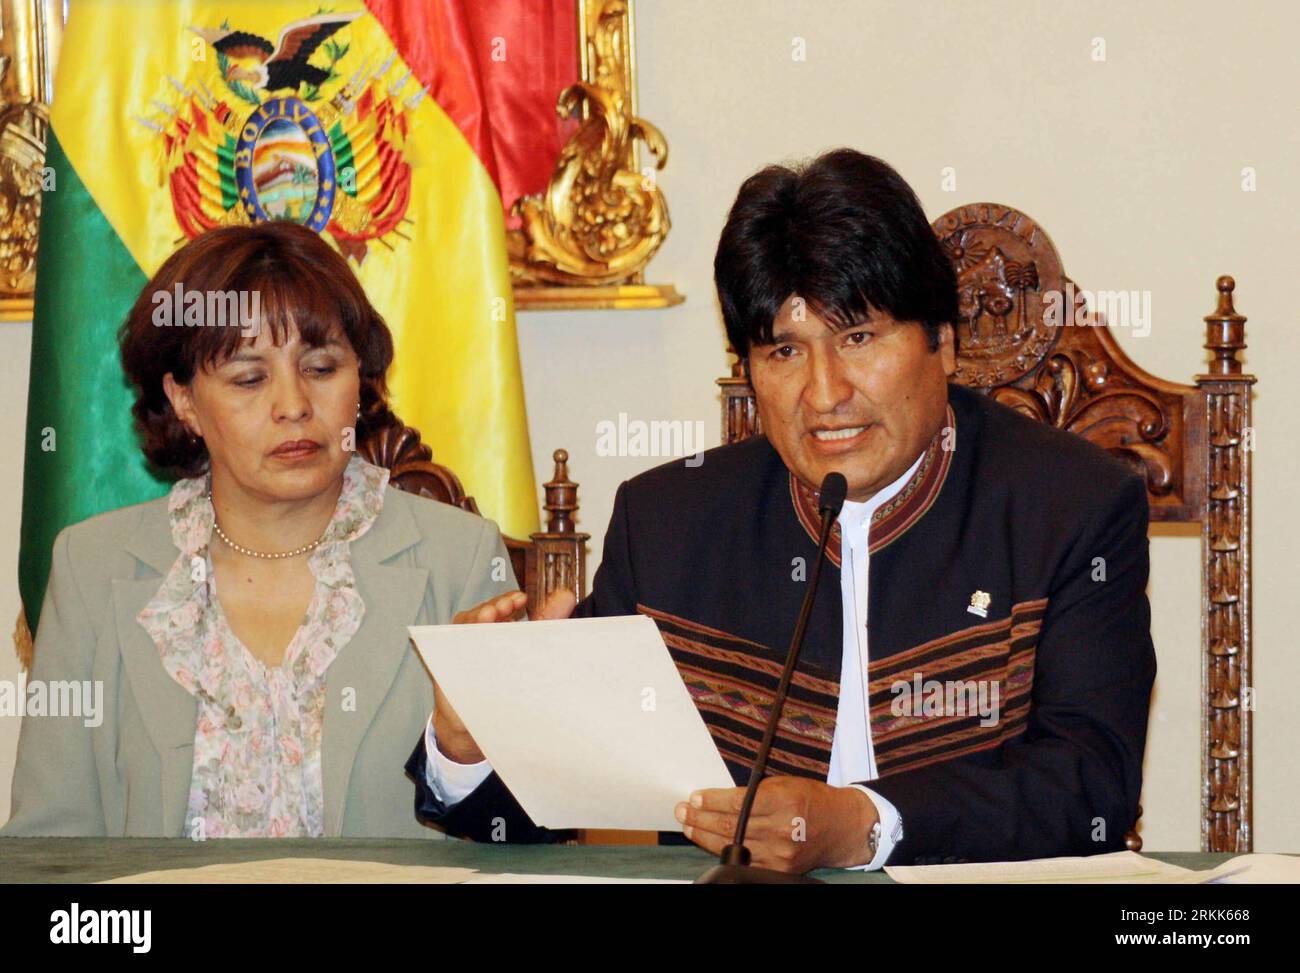 111022 -- LA PAZ, 22 octobre 2011 Xinhua -- le président bolivien Evo Morales R annonce un nouveau projet de loi pour la construction d'une route controversée, à la Paz, Bolivie, le 21 octobre 2011. Le projet original a provoqué des protestations et des confrontations de la Bolivie indigène indigène du territoire sécurisé d Isiboro TIPNIS, pour son acronyme espagnol, qui a commencé une marche vers la Paz, où ils ont été accueillis vendredi par Evo Morales. Xinhua/ABI axy BOLIVIA-LA PAZ-TIPNIS PUBLICATIONxNOTxINxCHN Banque D'Images